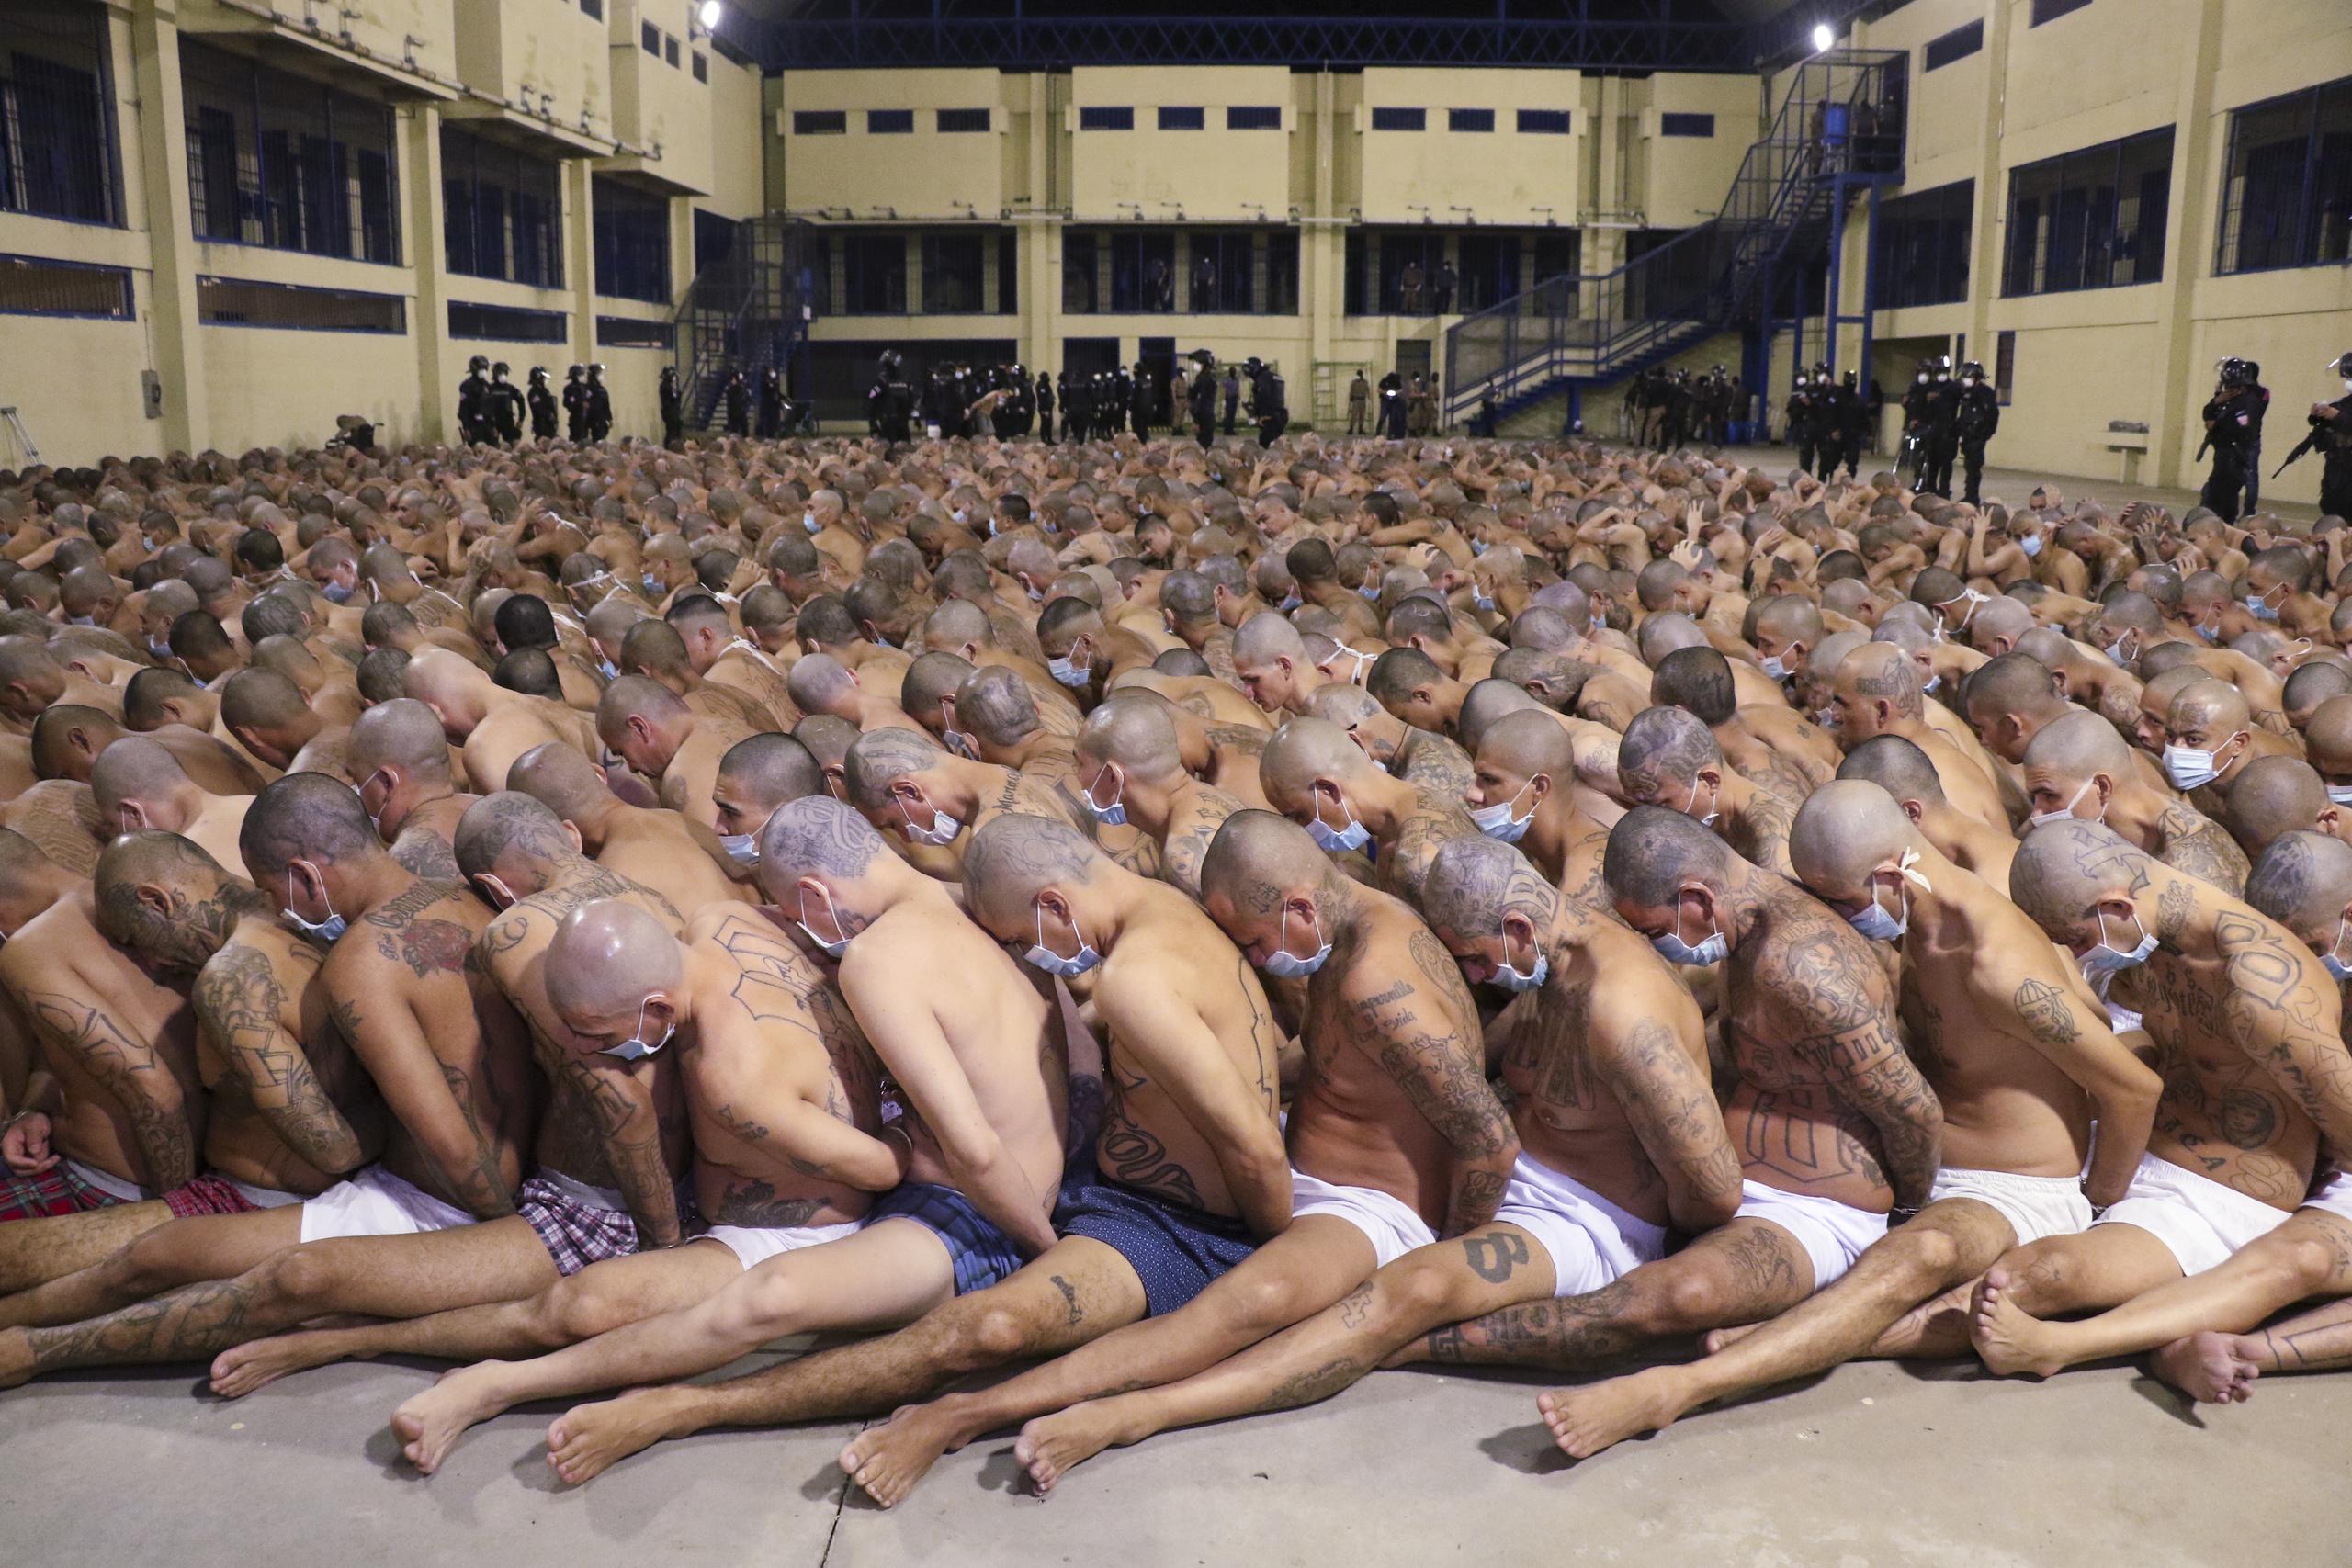 Los presos  usan máscaras durante una operación de seguridad en la prisión de Izalco en San Salvador, El Salvador.